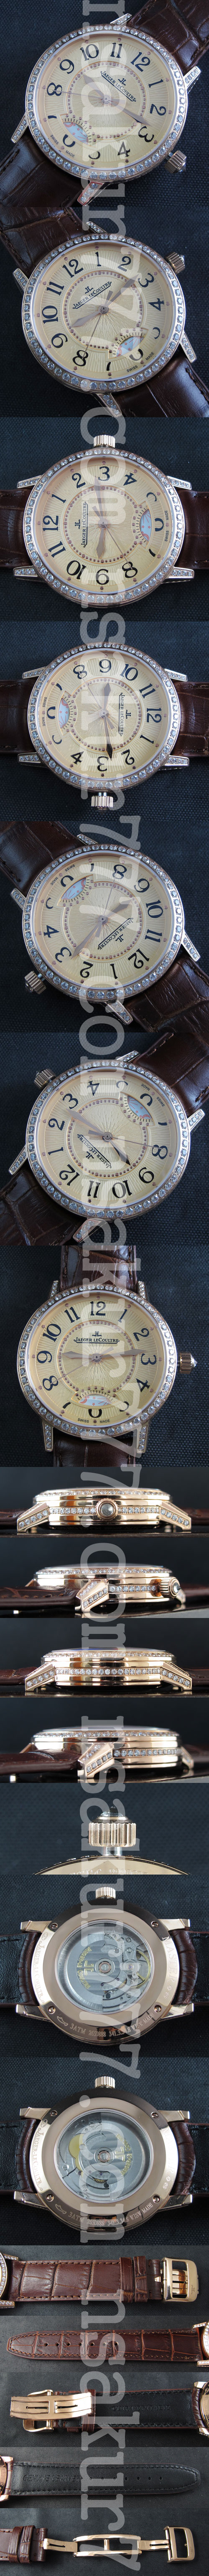 【アウトレット商品】ジャガー・ルクルト マスター・ランデヴー・自分に似合う腕時計